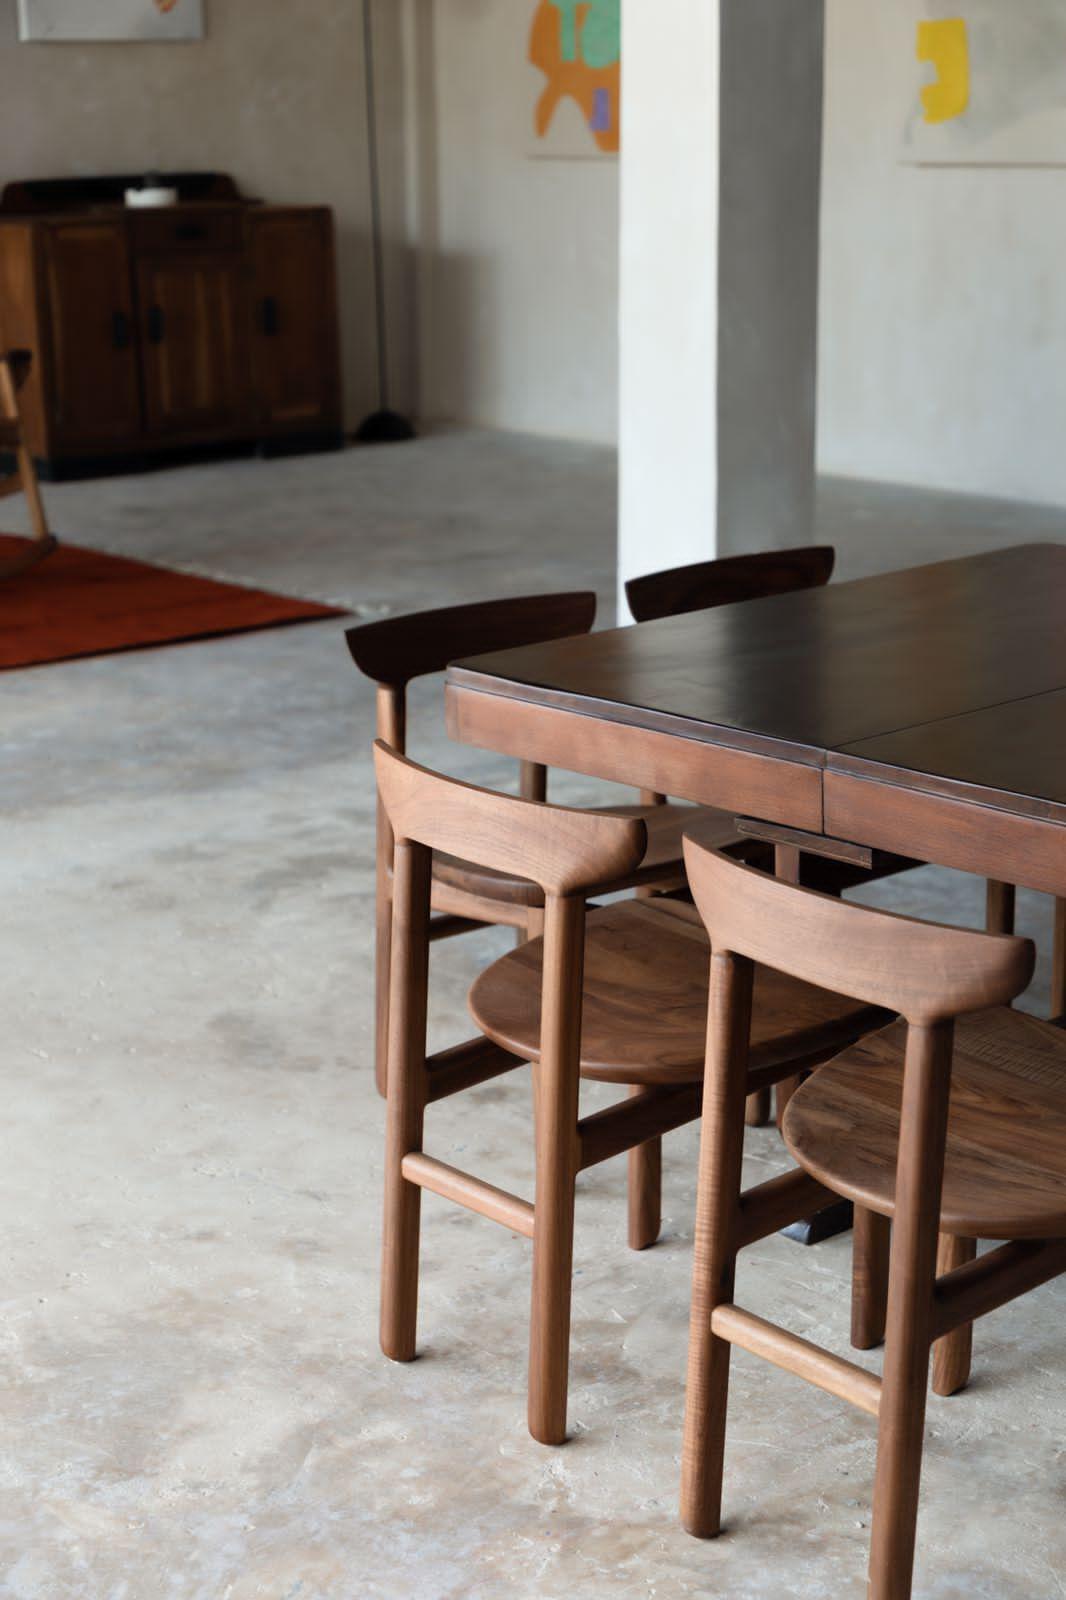 Le design de la chaise Muna est basé sur des lignes douces et des bords arrondis, avec une construction solide mais légère qui fait ressortir les joints du bois en utilisant les techniques de l'ébénisterie traditionnelle. Une structure simple et